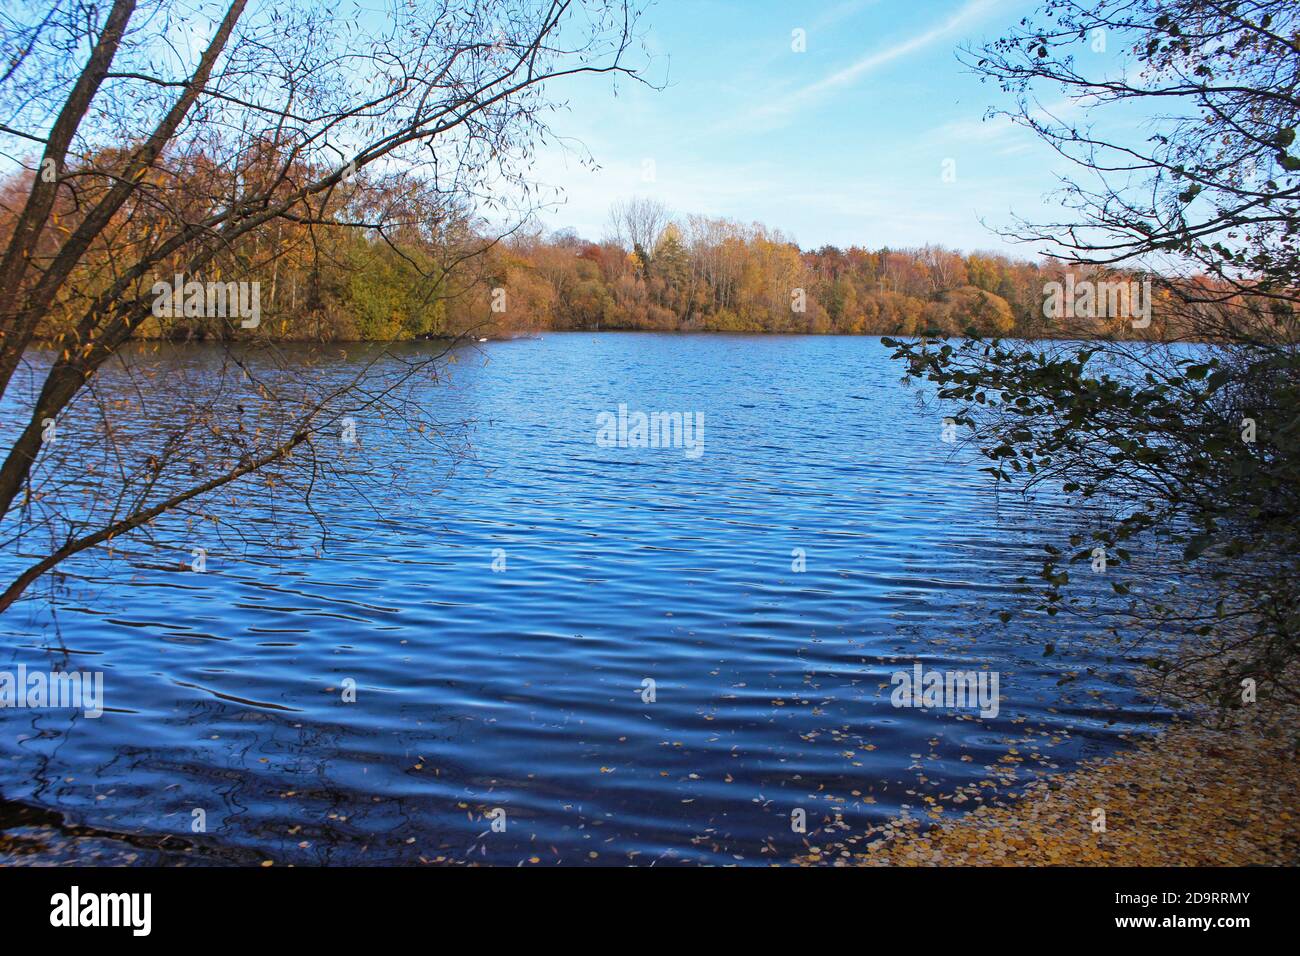 Wunderschöne Landschaft des Chorlton Wasserpark in England, großer blauer ruhiger See, blauer Himmel, Herbstbüsche und Bäume an den Ufern Stockfoto